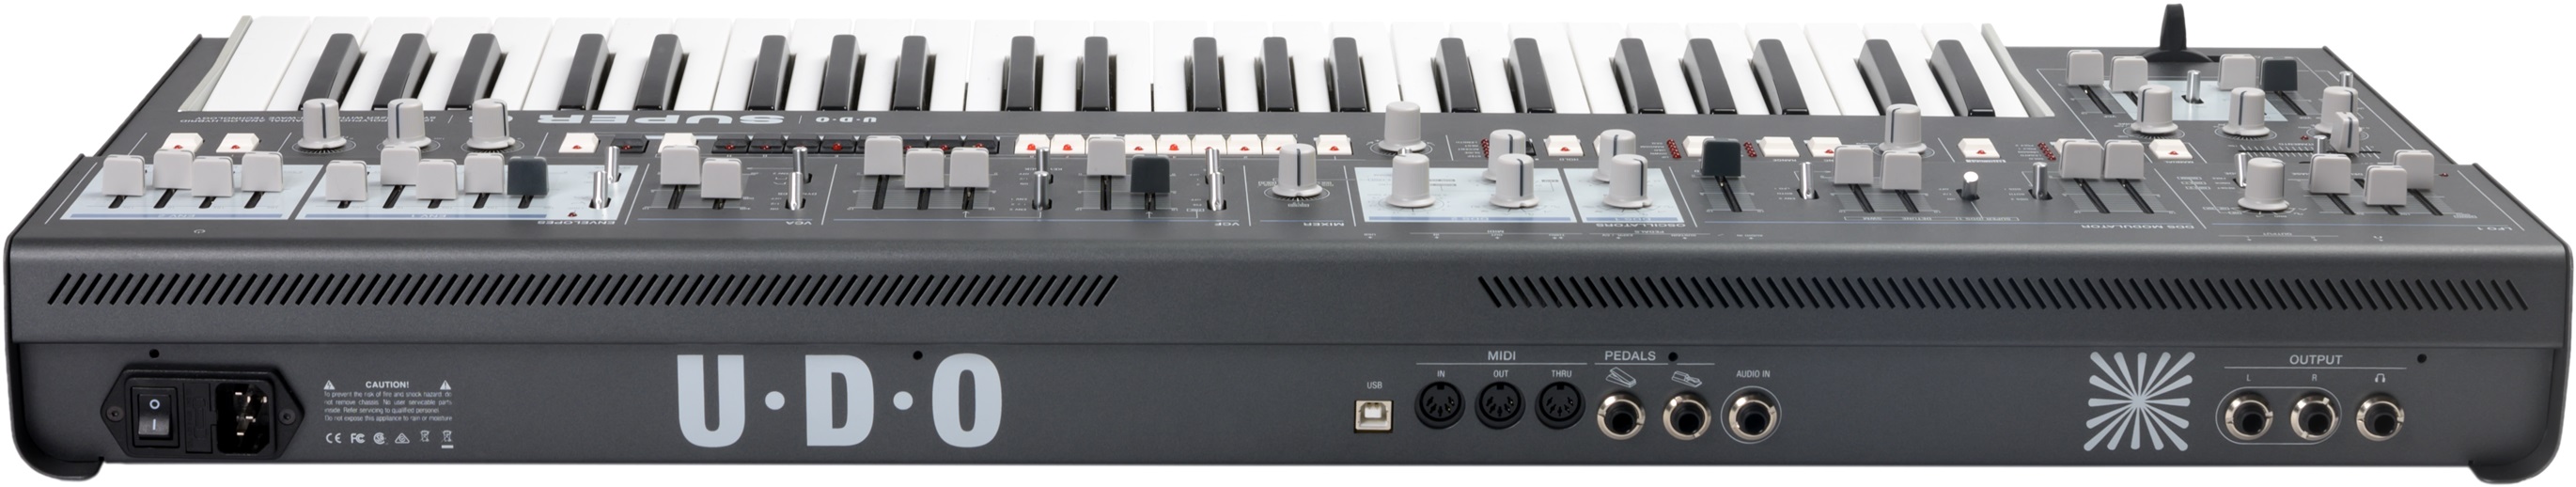 Udo Audio Super 6 Keyboard Black - Synthesizer - Variation 4